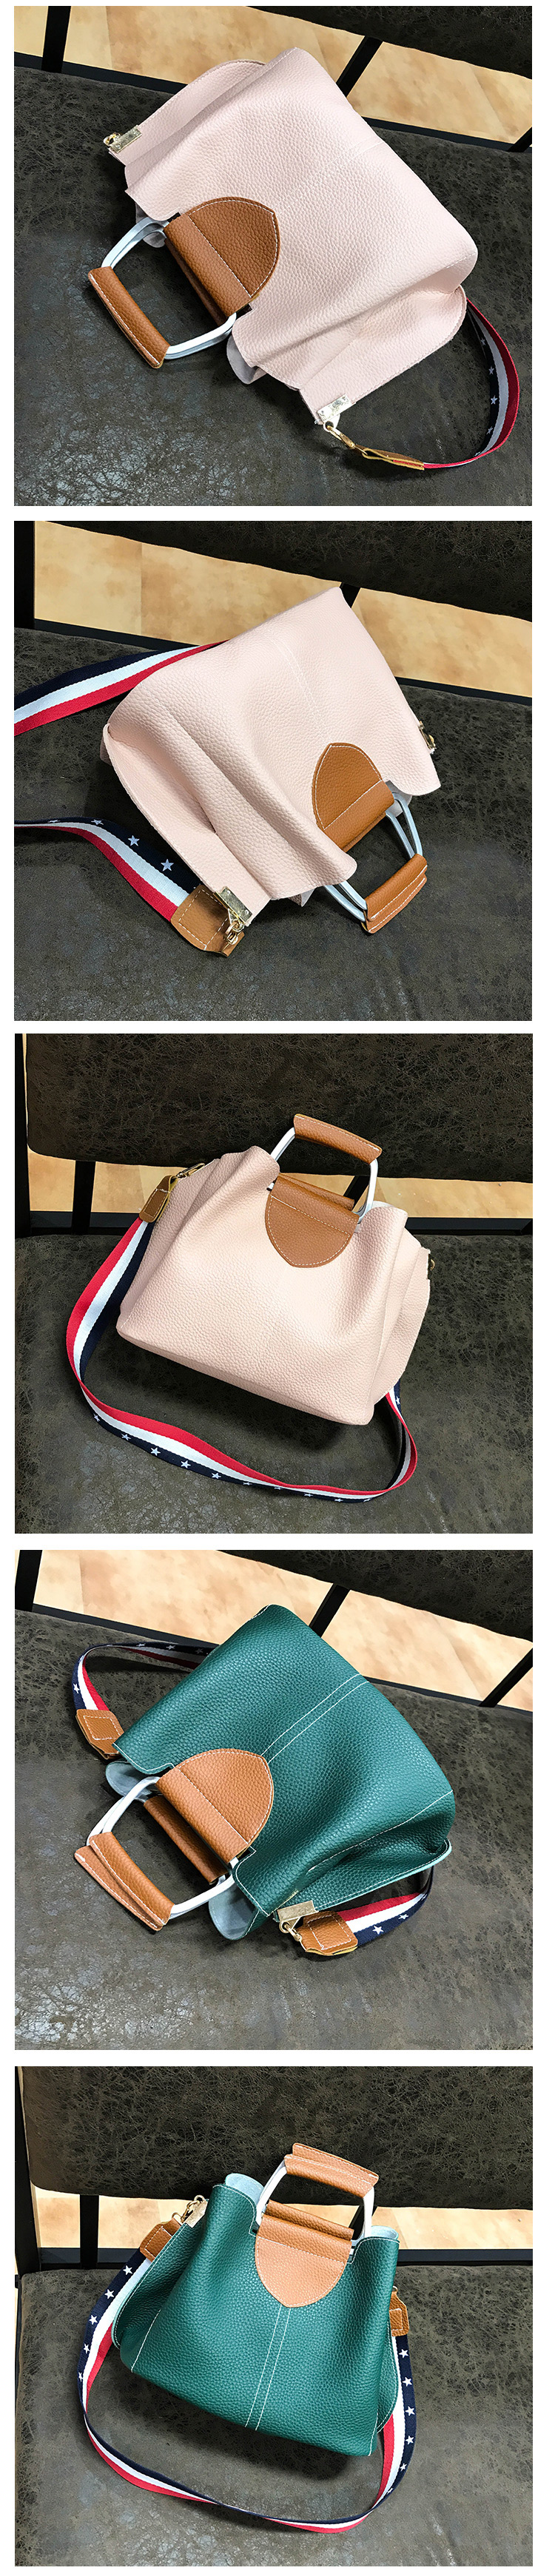 Fashion Brown Pure Color Decorated Handbag,Handbags